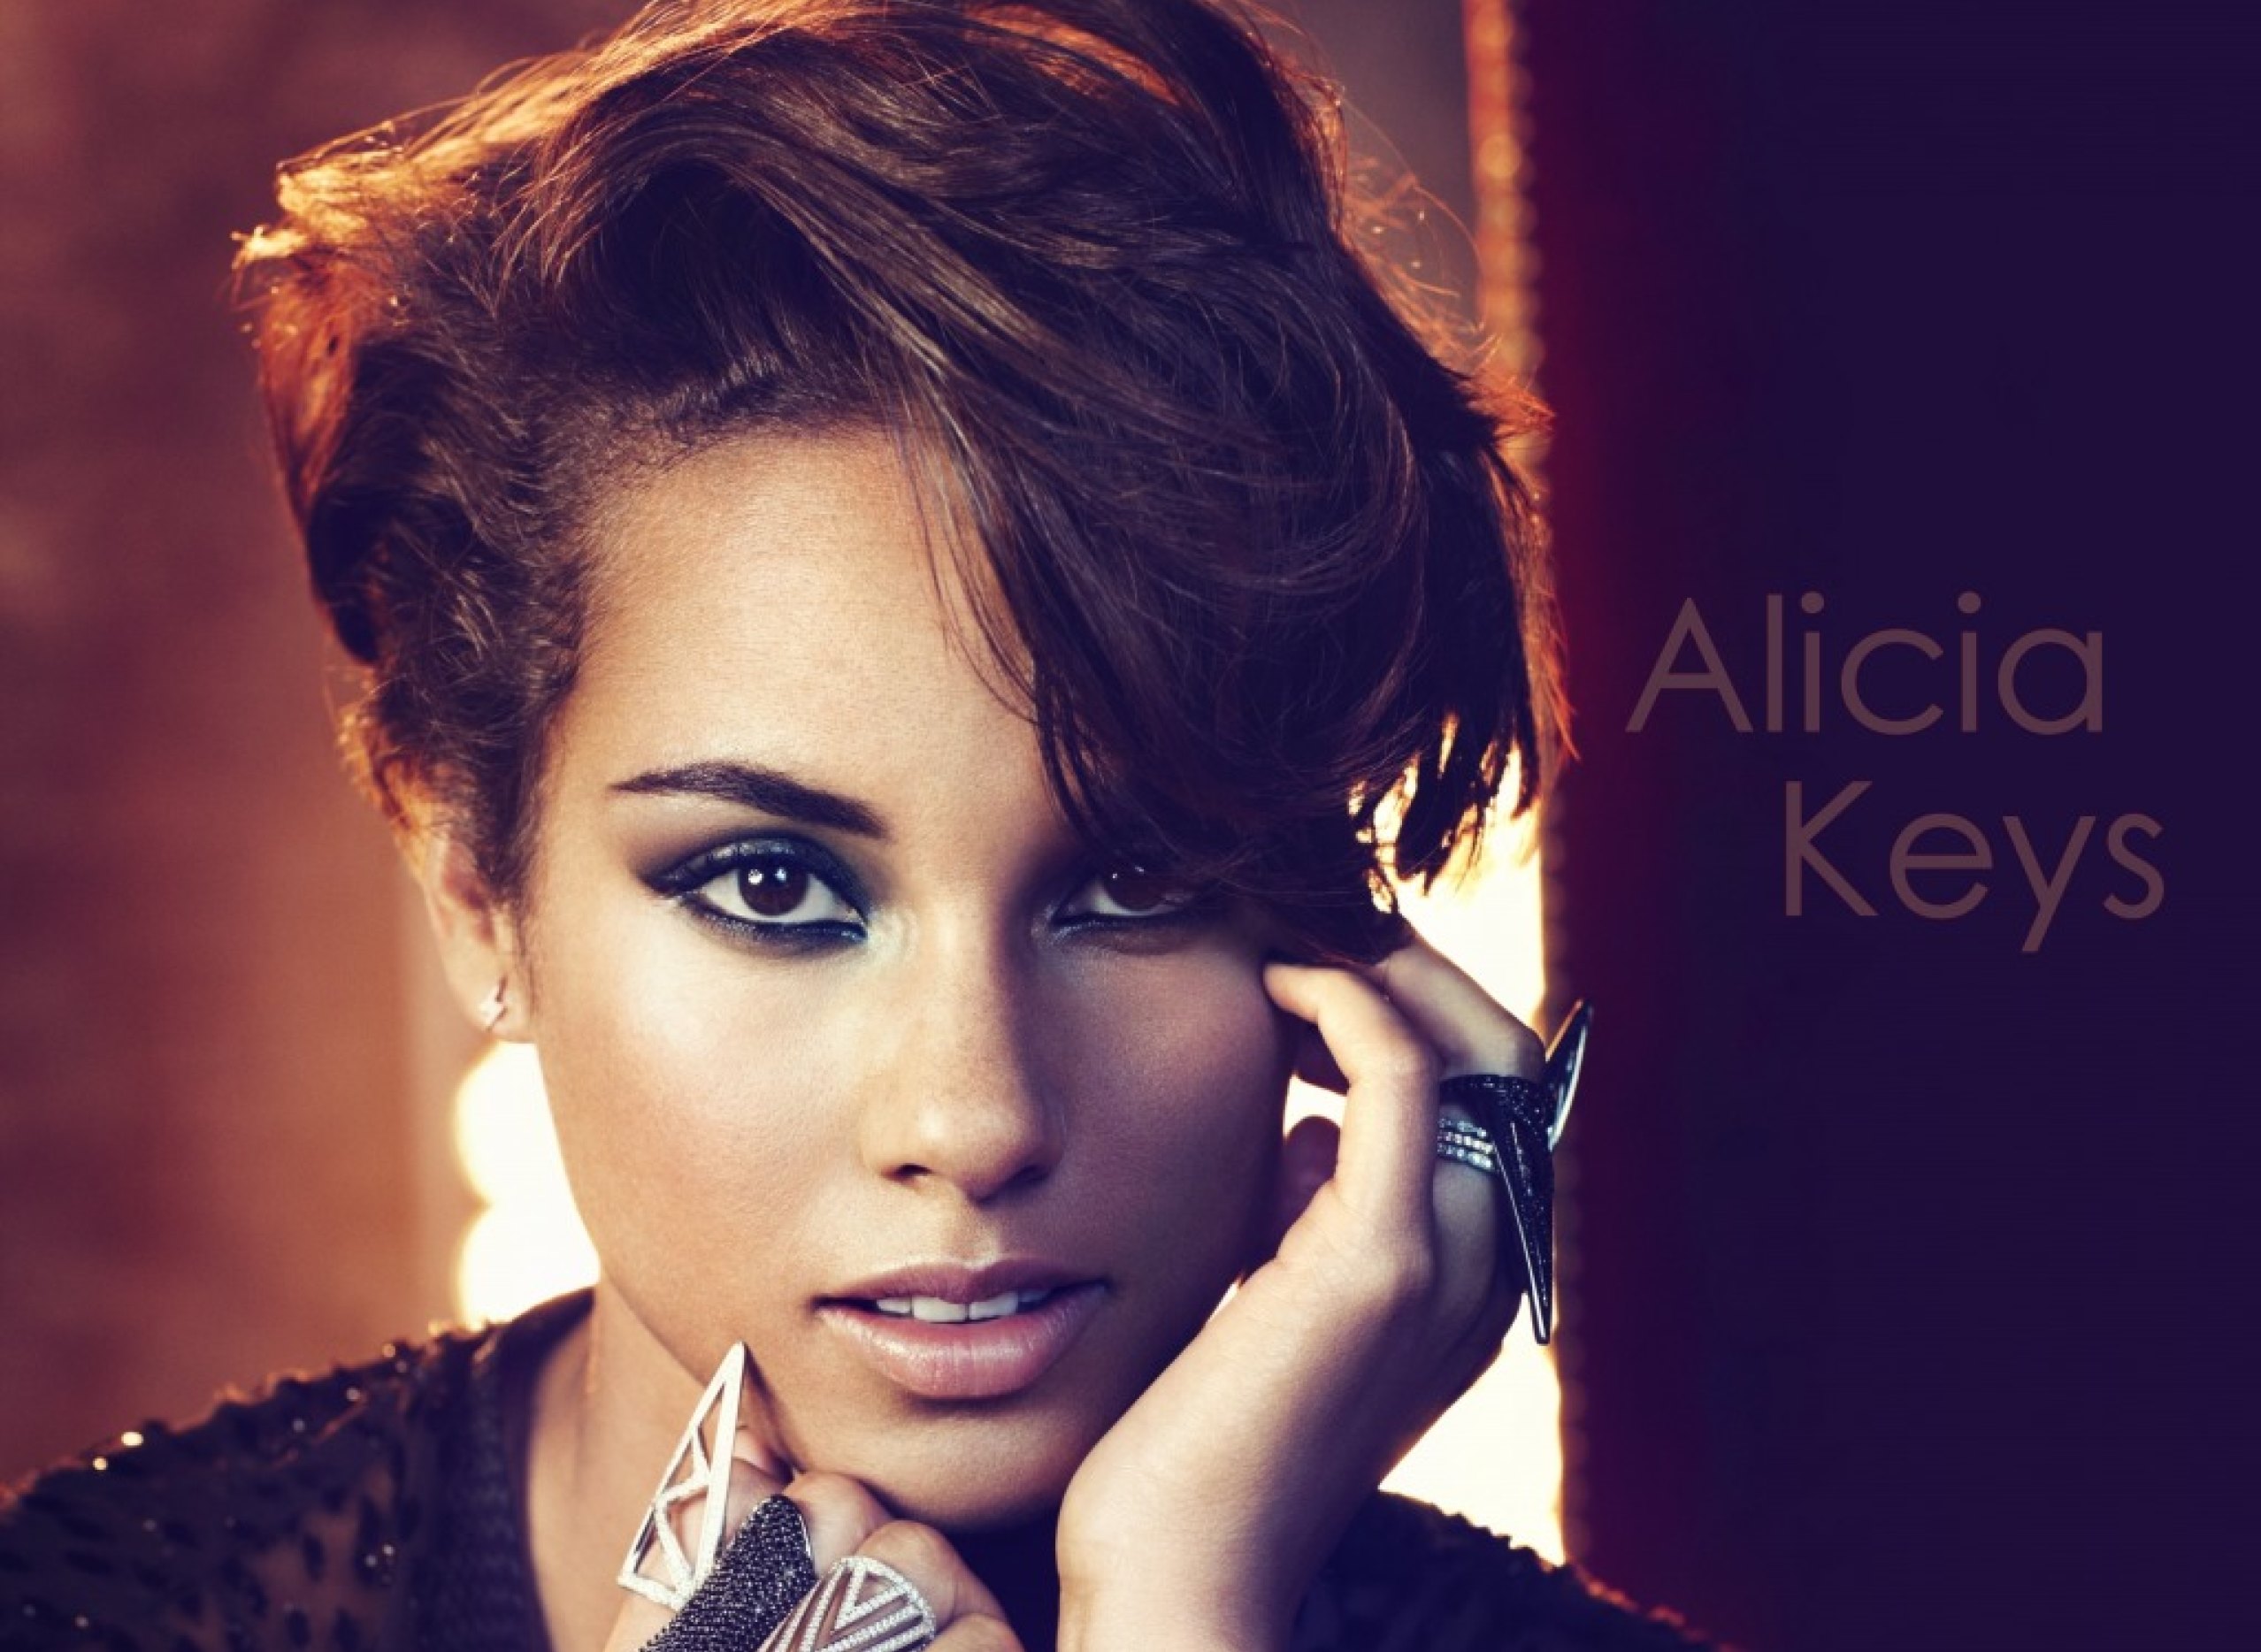 Скачать обои бесплатно Музыка, Alicia Keys картинка на рабочий стол ПК